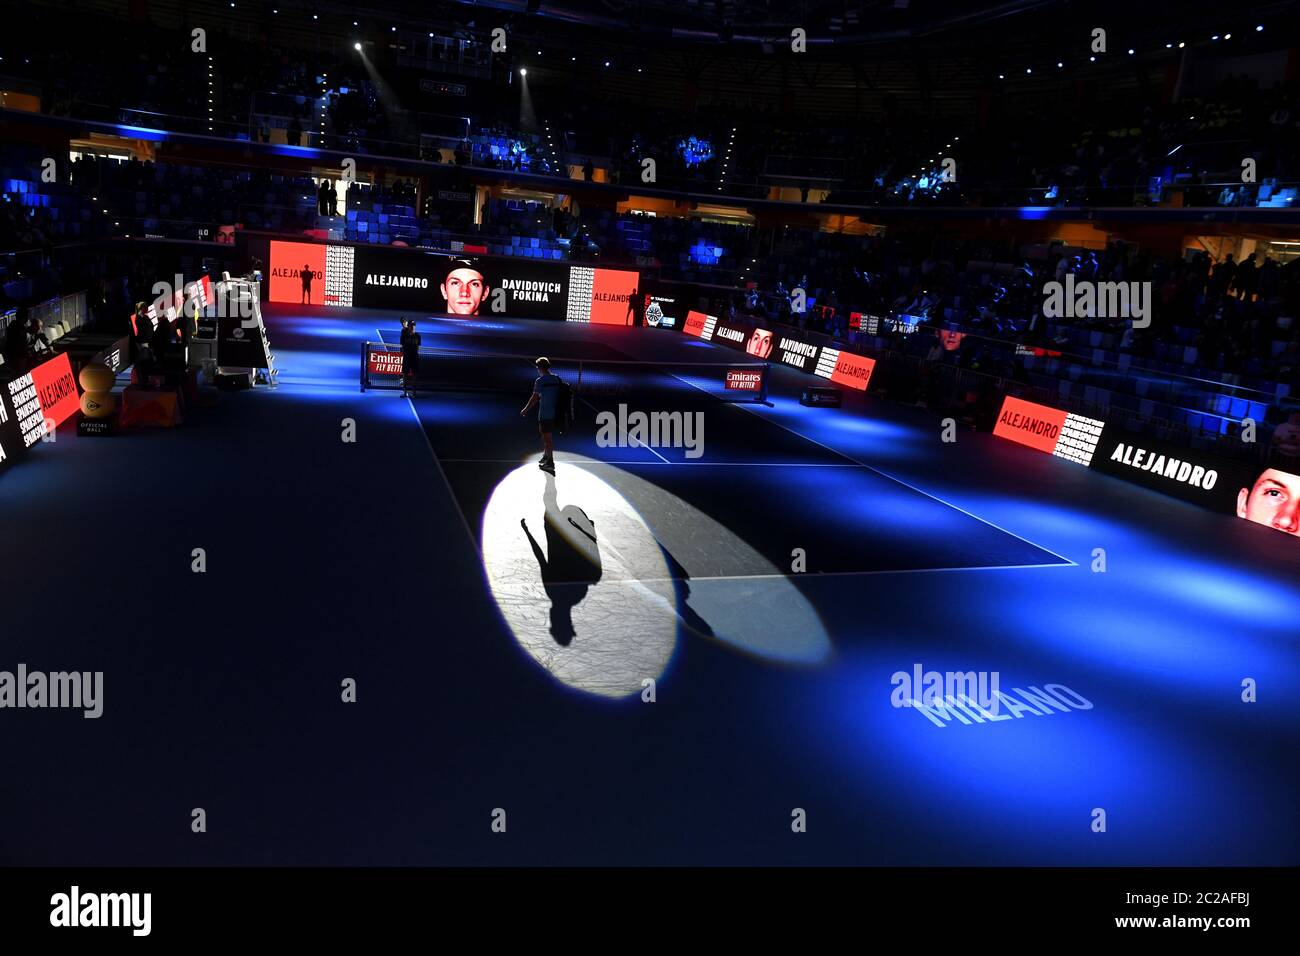 Digital scoreboard of the indoor tennis court, Allianz Arena; during the Next Gen ATP Finals, in Milan. Stock Photo